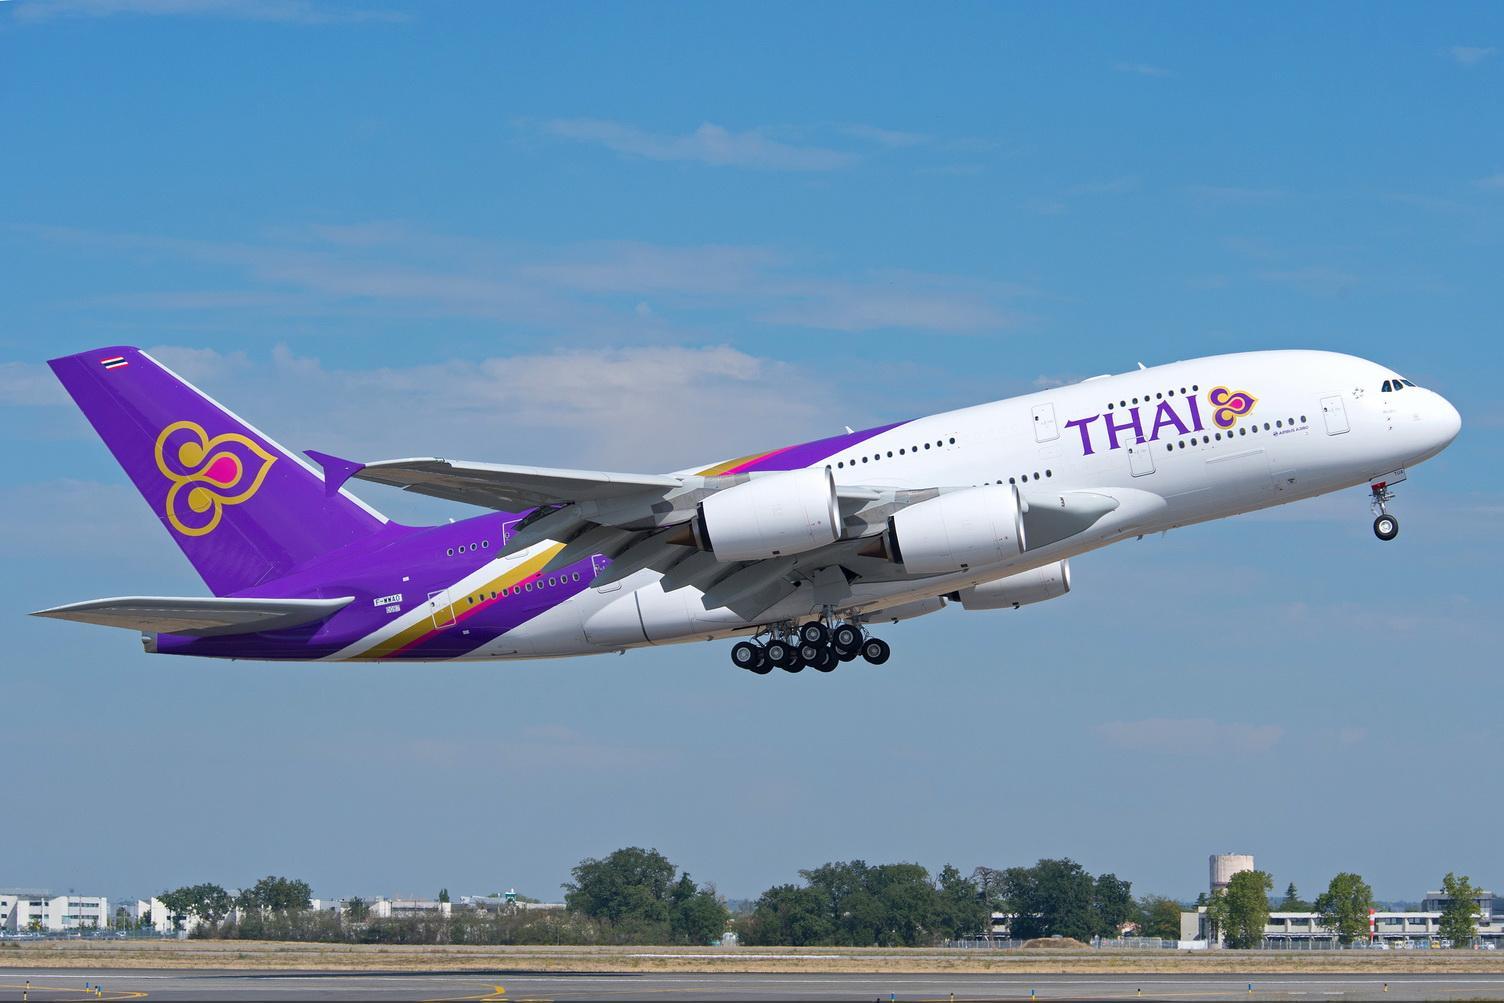 В ноябре возобнавляется авиасообщение между Таиландом и Иркутском